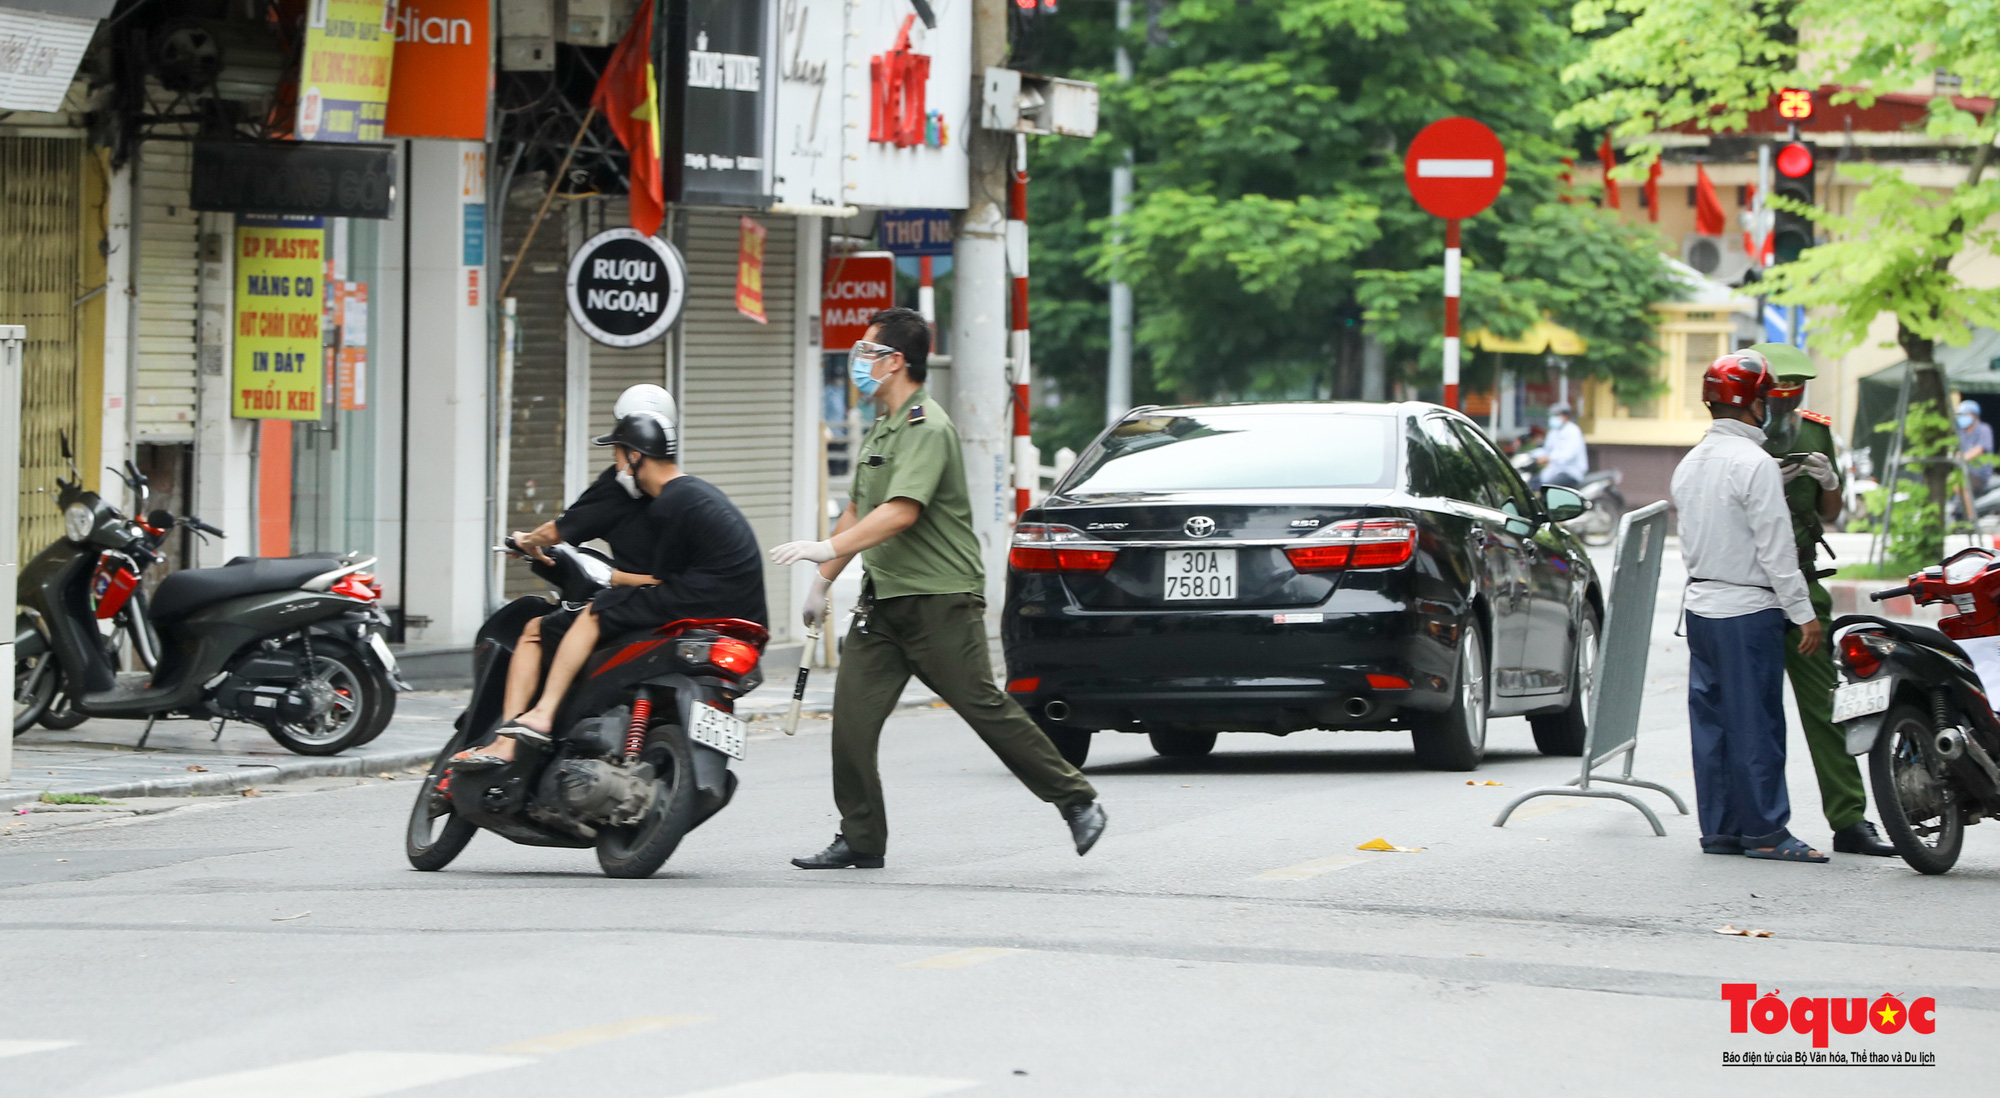 Công an quận Hoàn Kiếm triển khai tổ công tác đặc biệt kiểm soát giấy đi đường, nhiều trường hợp quay đầu bỏ chạy - Ảnh 13.